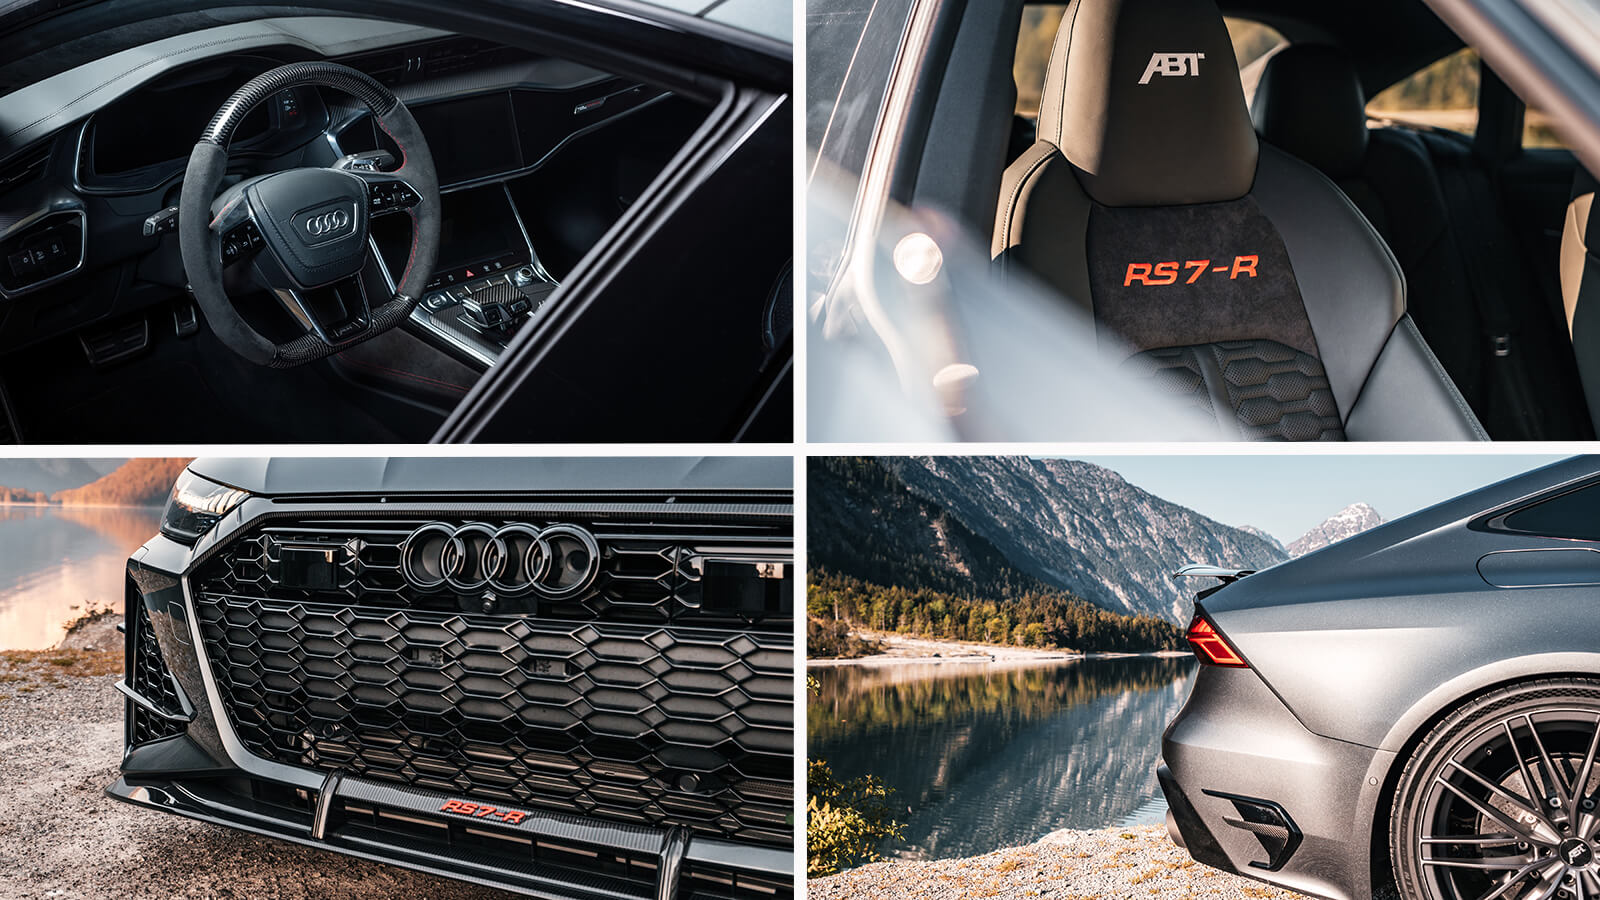  Audi ABT RS7-R